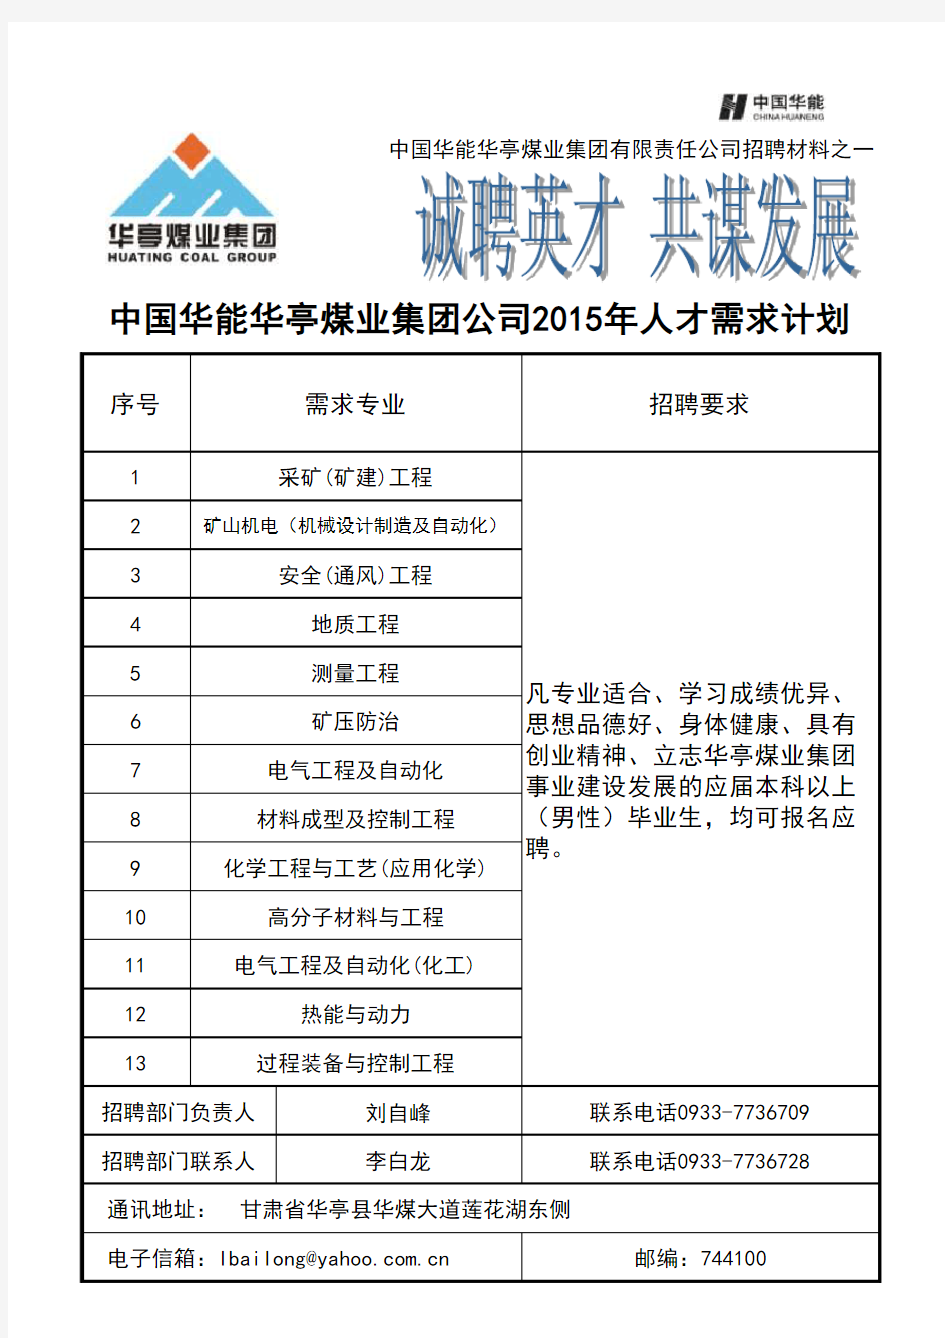 2015年重点专业人才需求表(中国矿大)